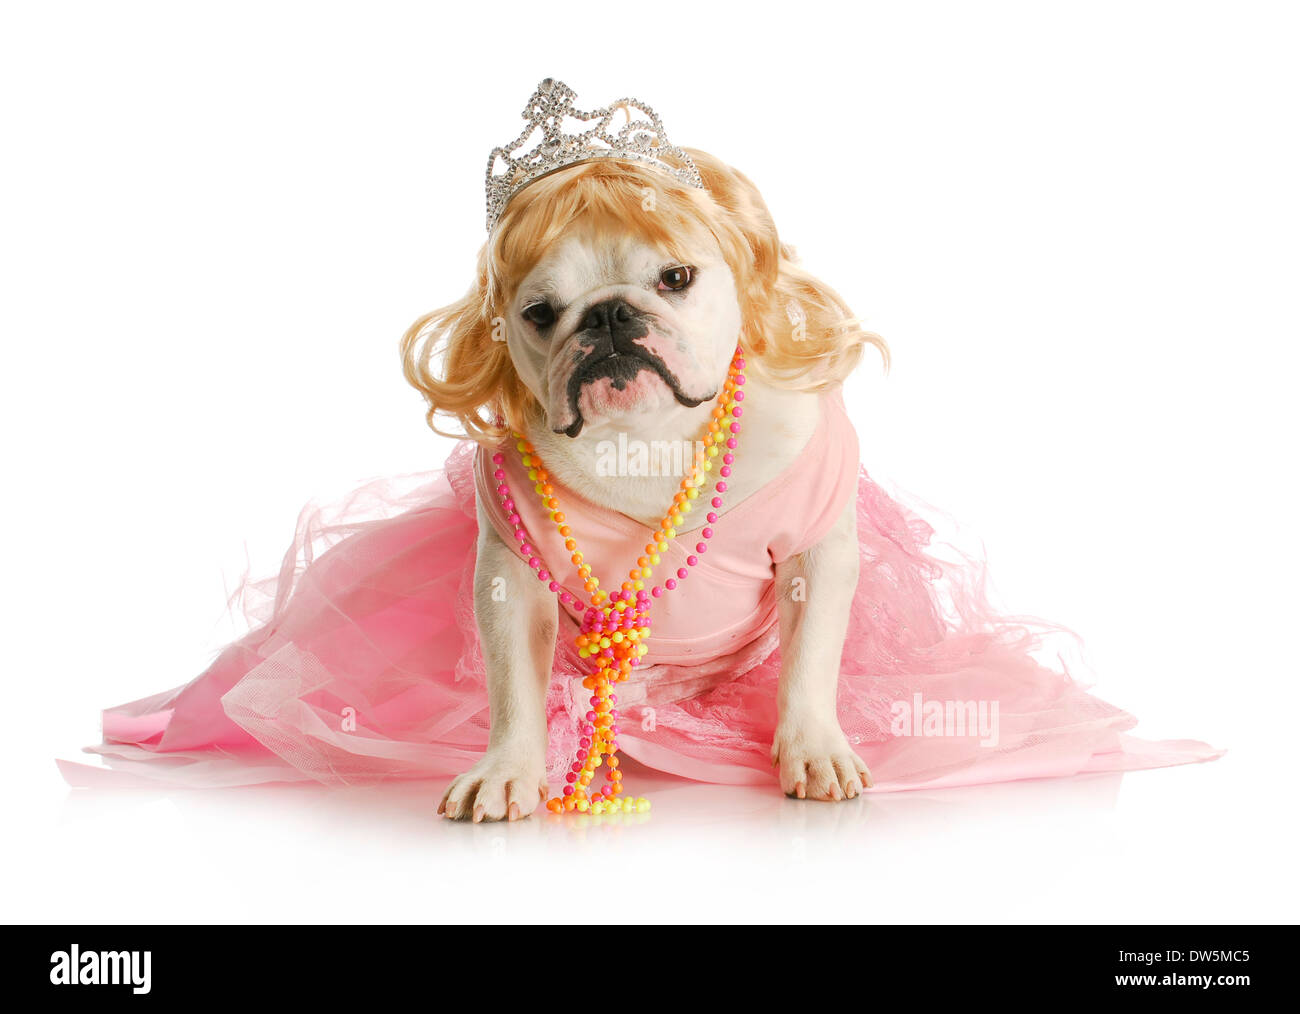 spoiled female dog - english bulldog dressed like a princess on white background Stock Photo